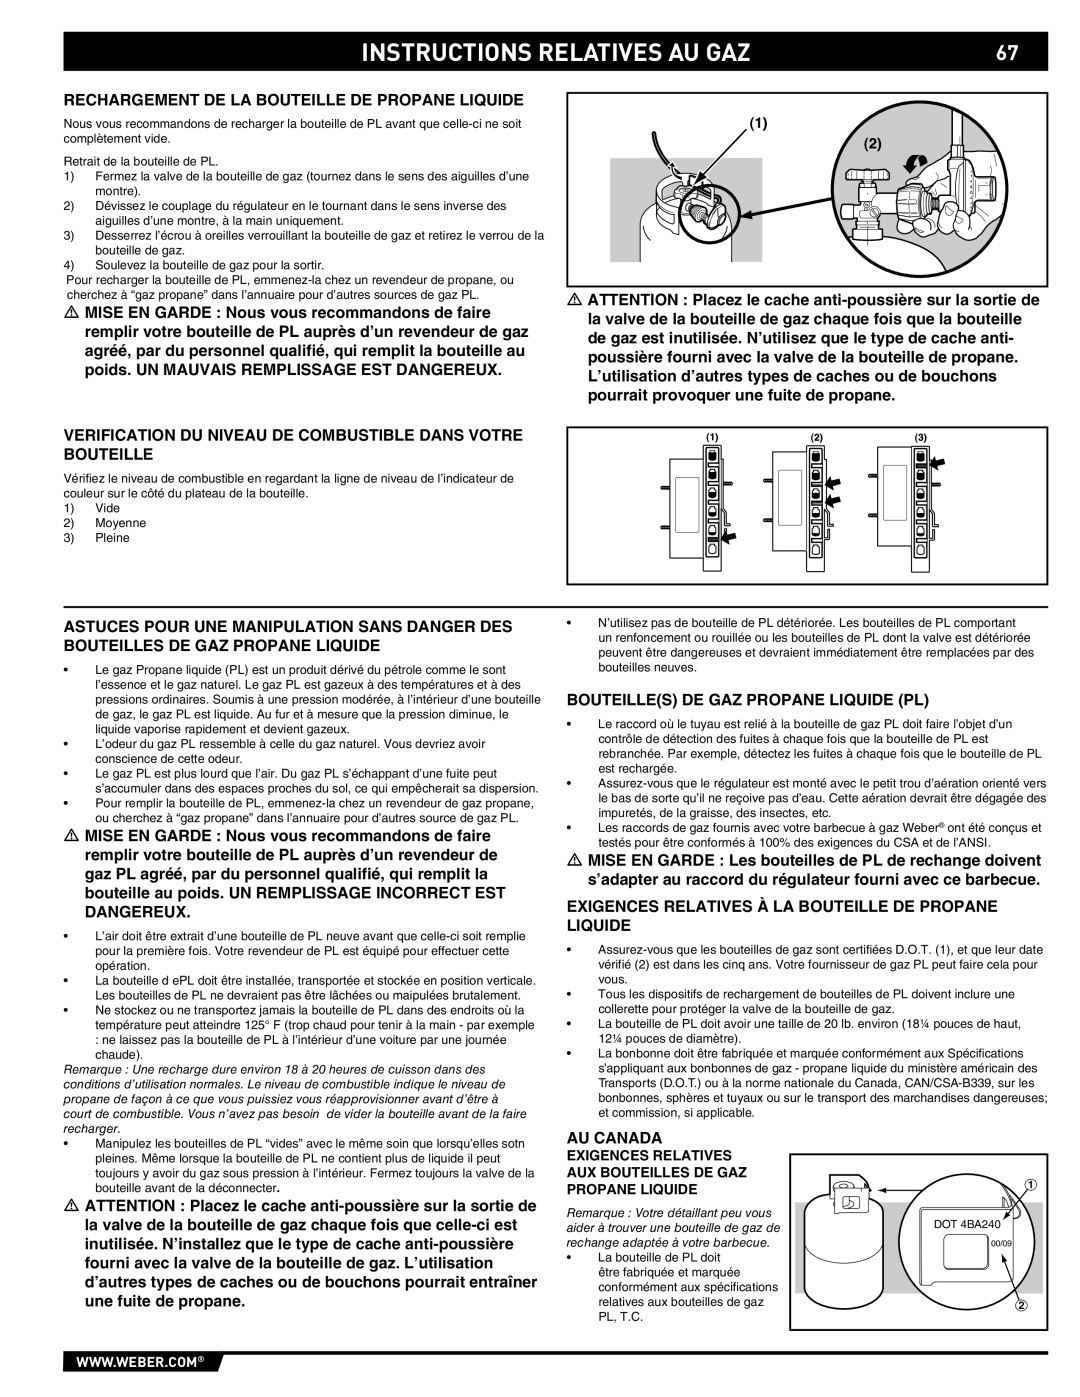 Summit 89190 manual Instructions Relatives Au Gaz, Rechargement De La Bouteille De Propane Liquide 